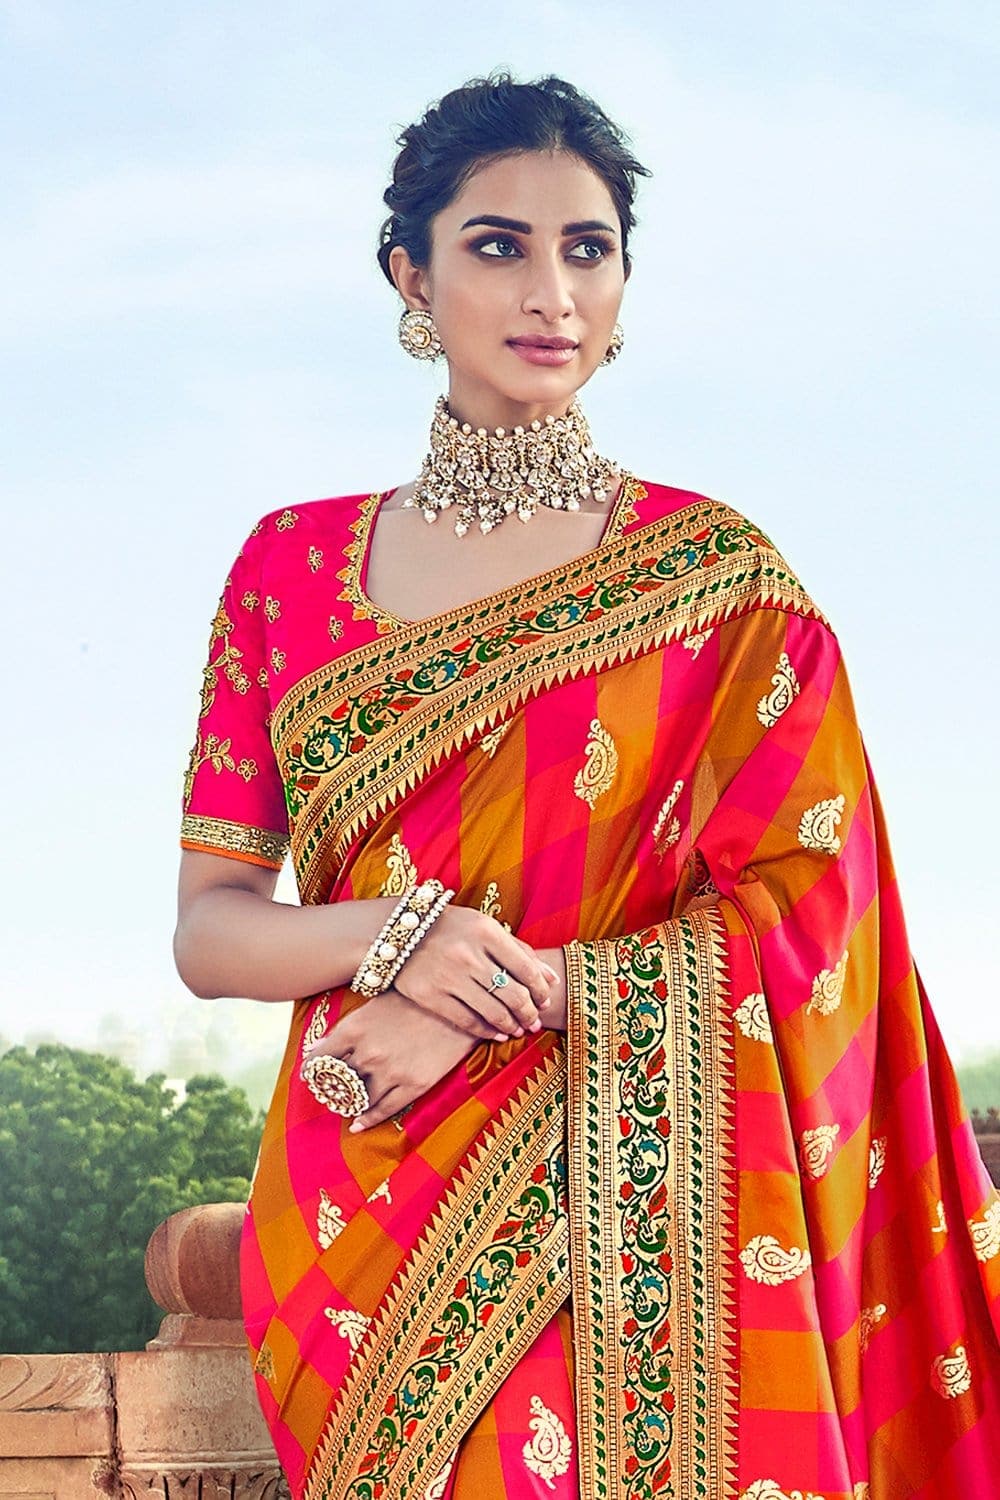 Buy Shades of yellow,pink banarasi saree online at best price - Karagiri